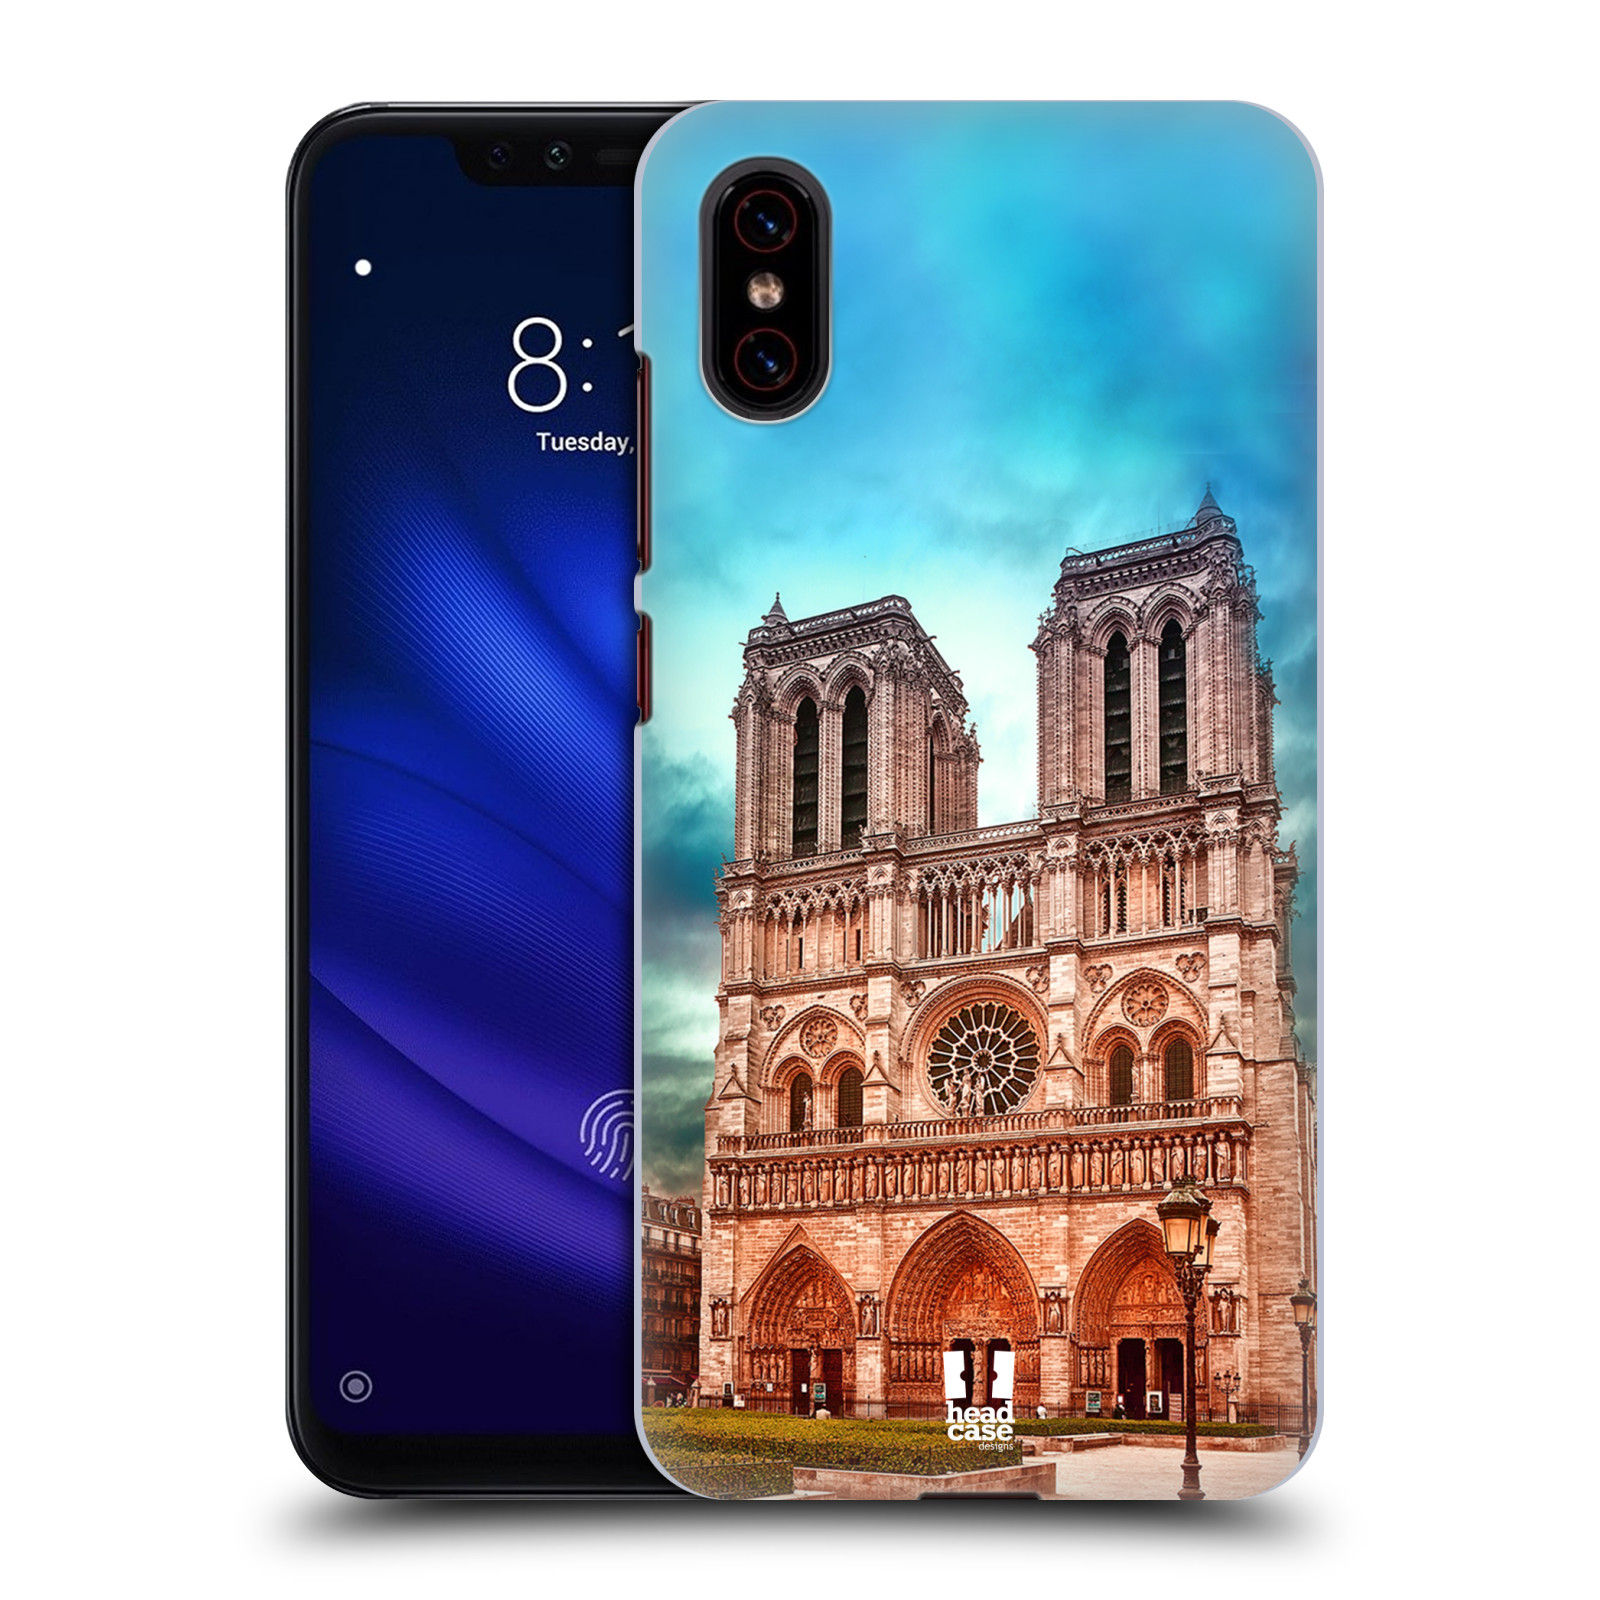 Pouzdro na mobil Xiaomi  Mi 8 PRO - HEAD CASE - historická místa katedrála Notre Dame